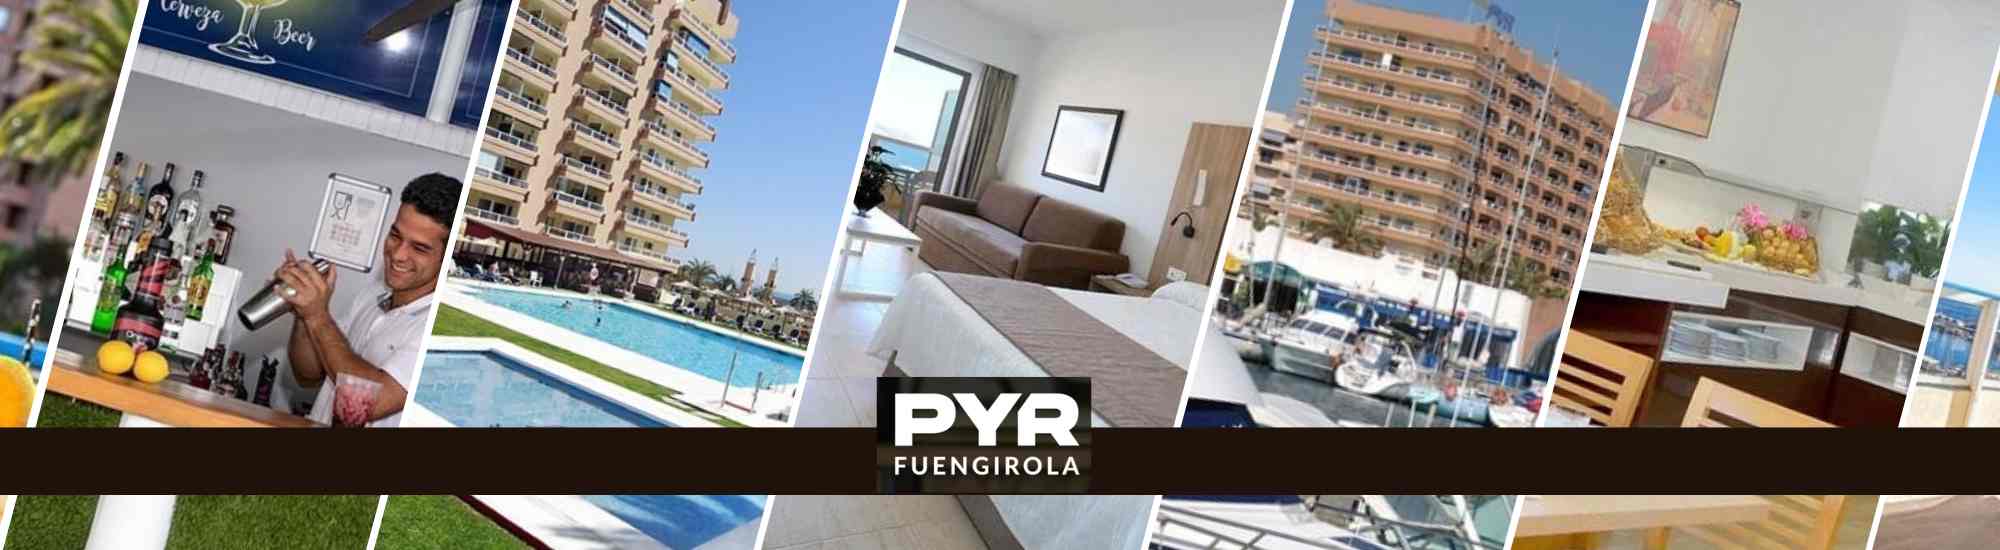 Hotel Pyr Fuengirola